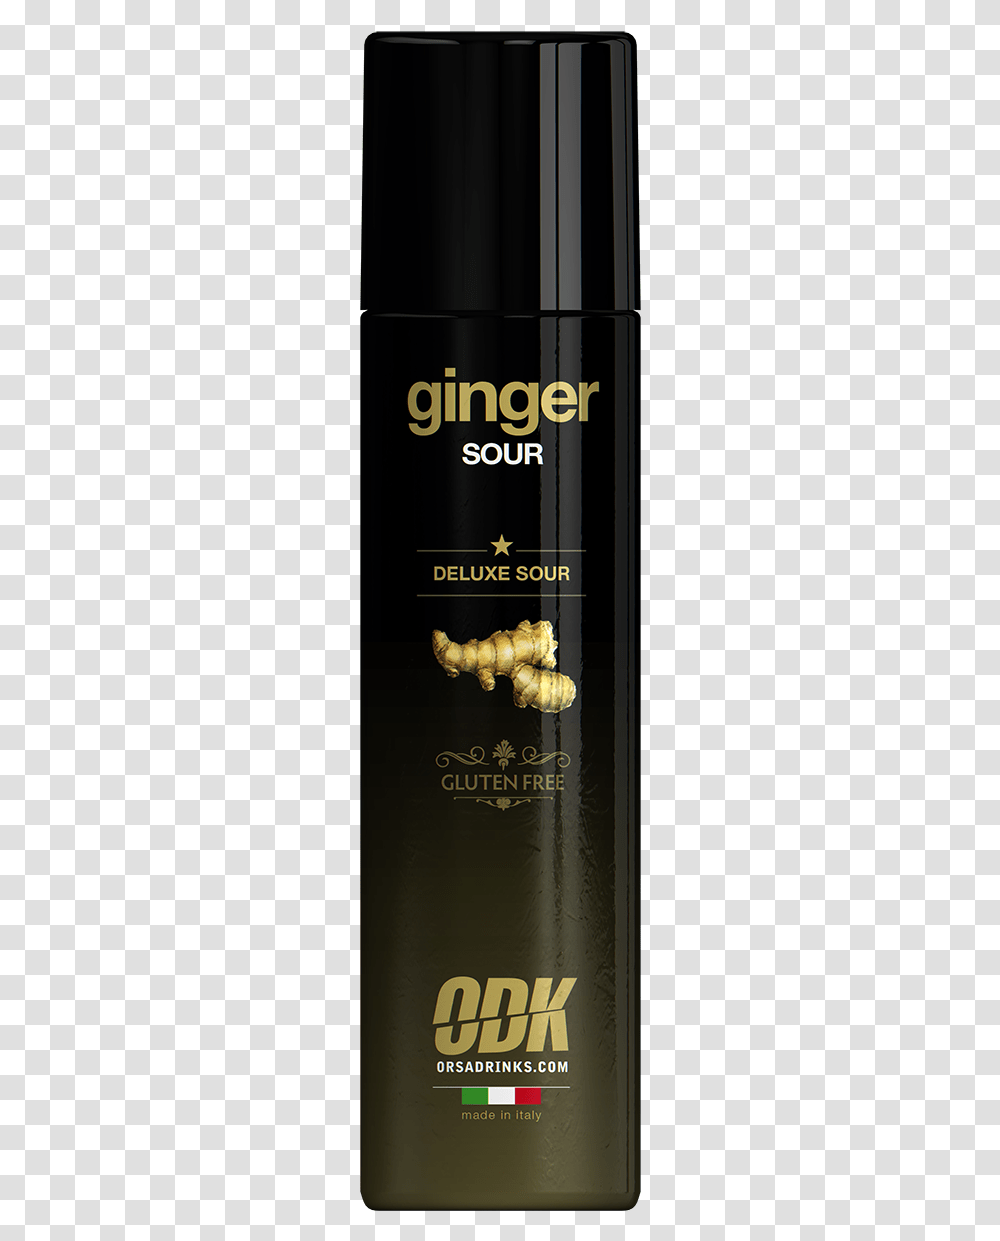 Odk Product, Plant, Ginger, Beverage Transparent Png